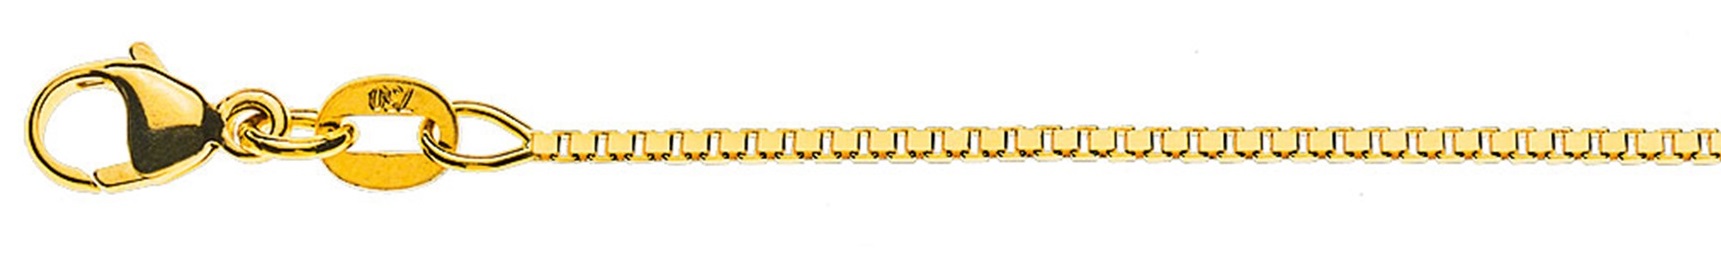 AURONOS Prestige Collier en or jaune 18K vénitien diamanté 45cm 1.1mm